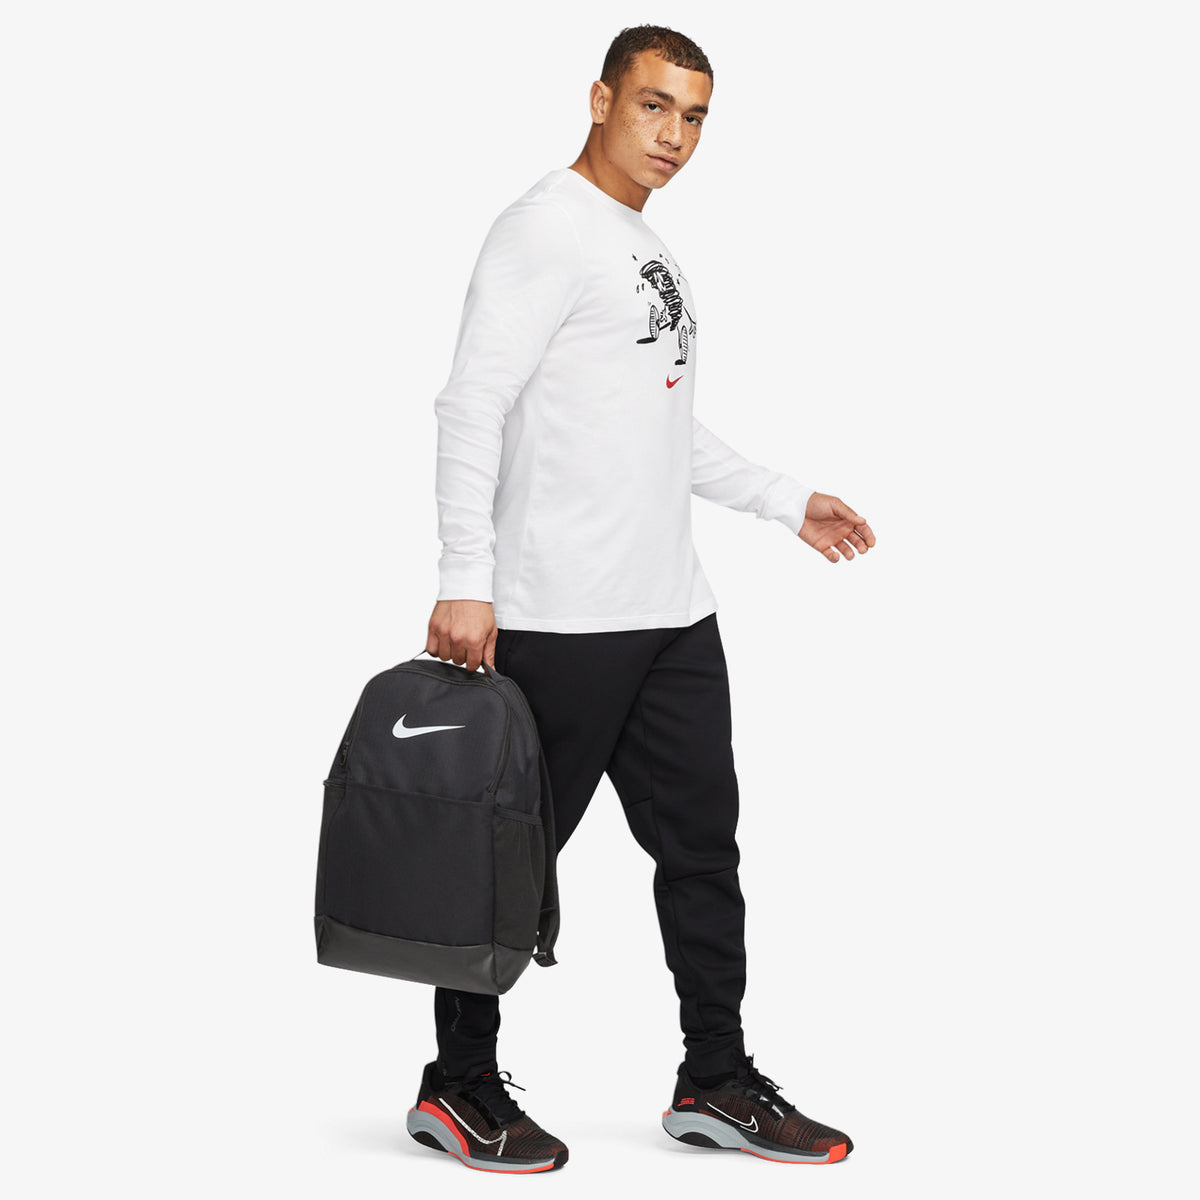 Nike / Brasilia 9.5 XL Training Backpack